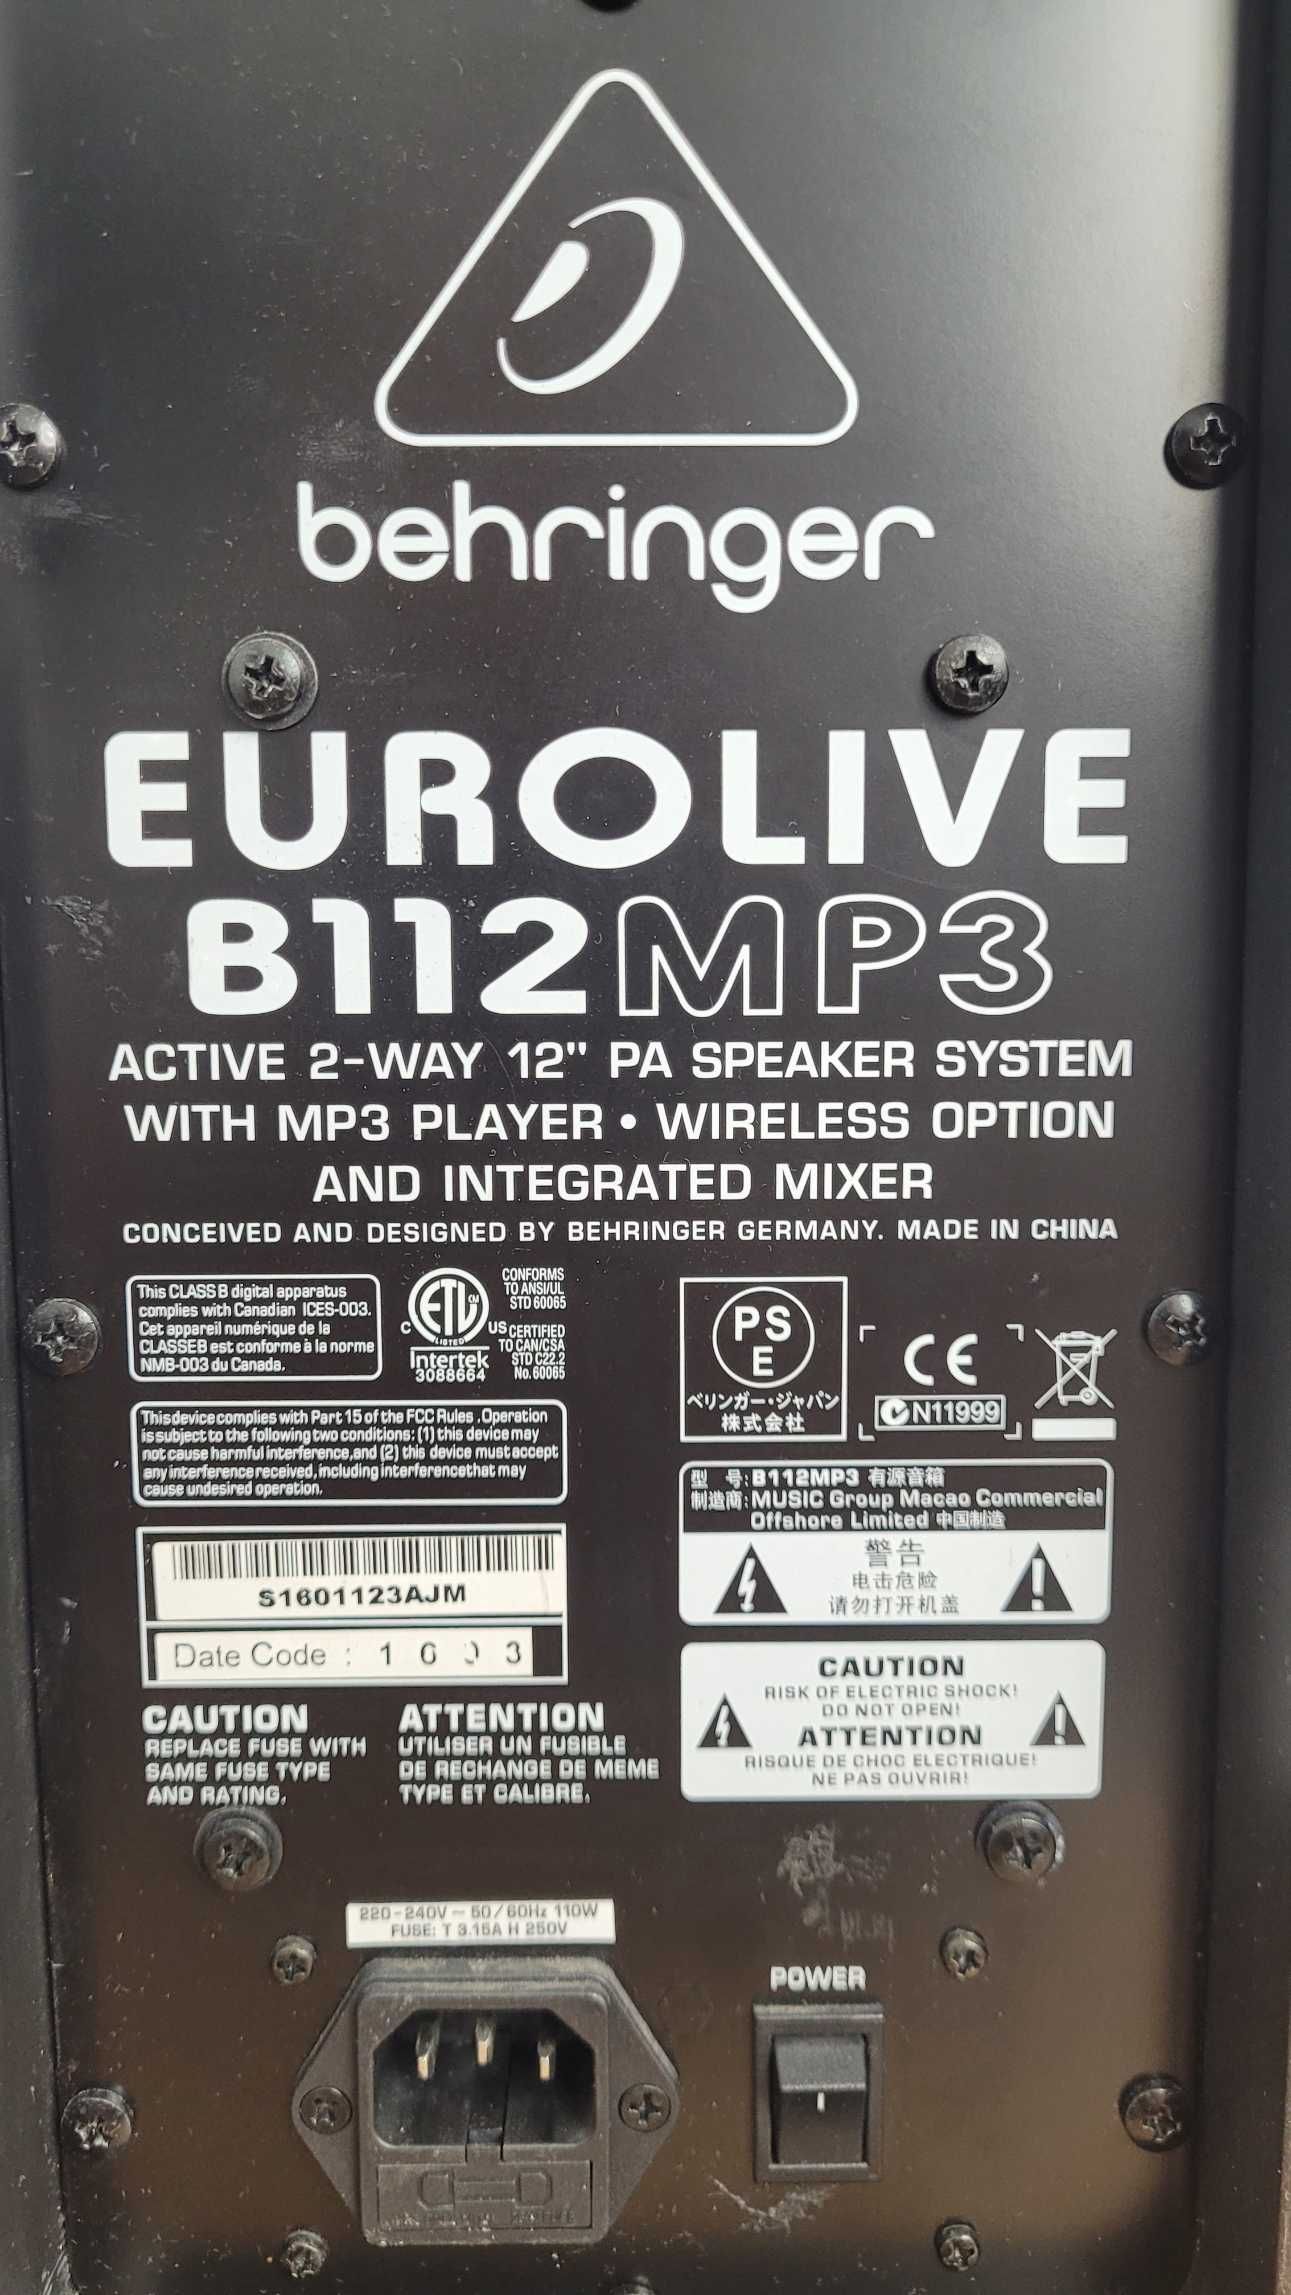 Behringer EUROLIVE B112 MP3